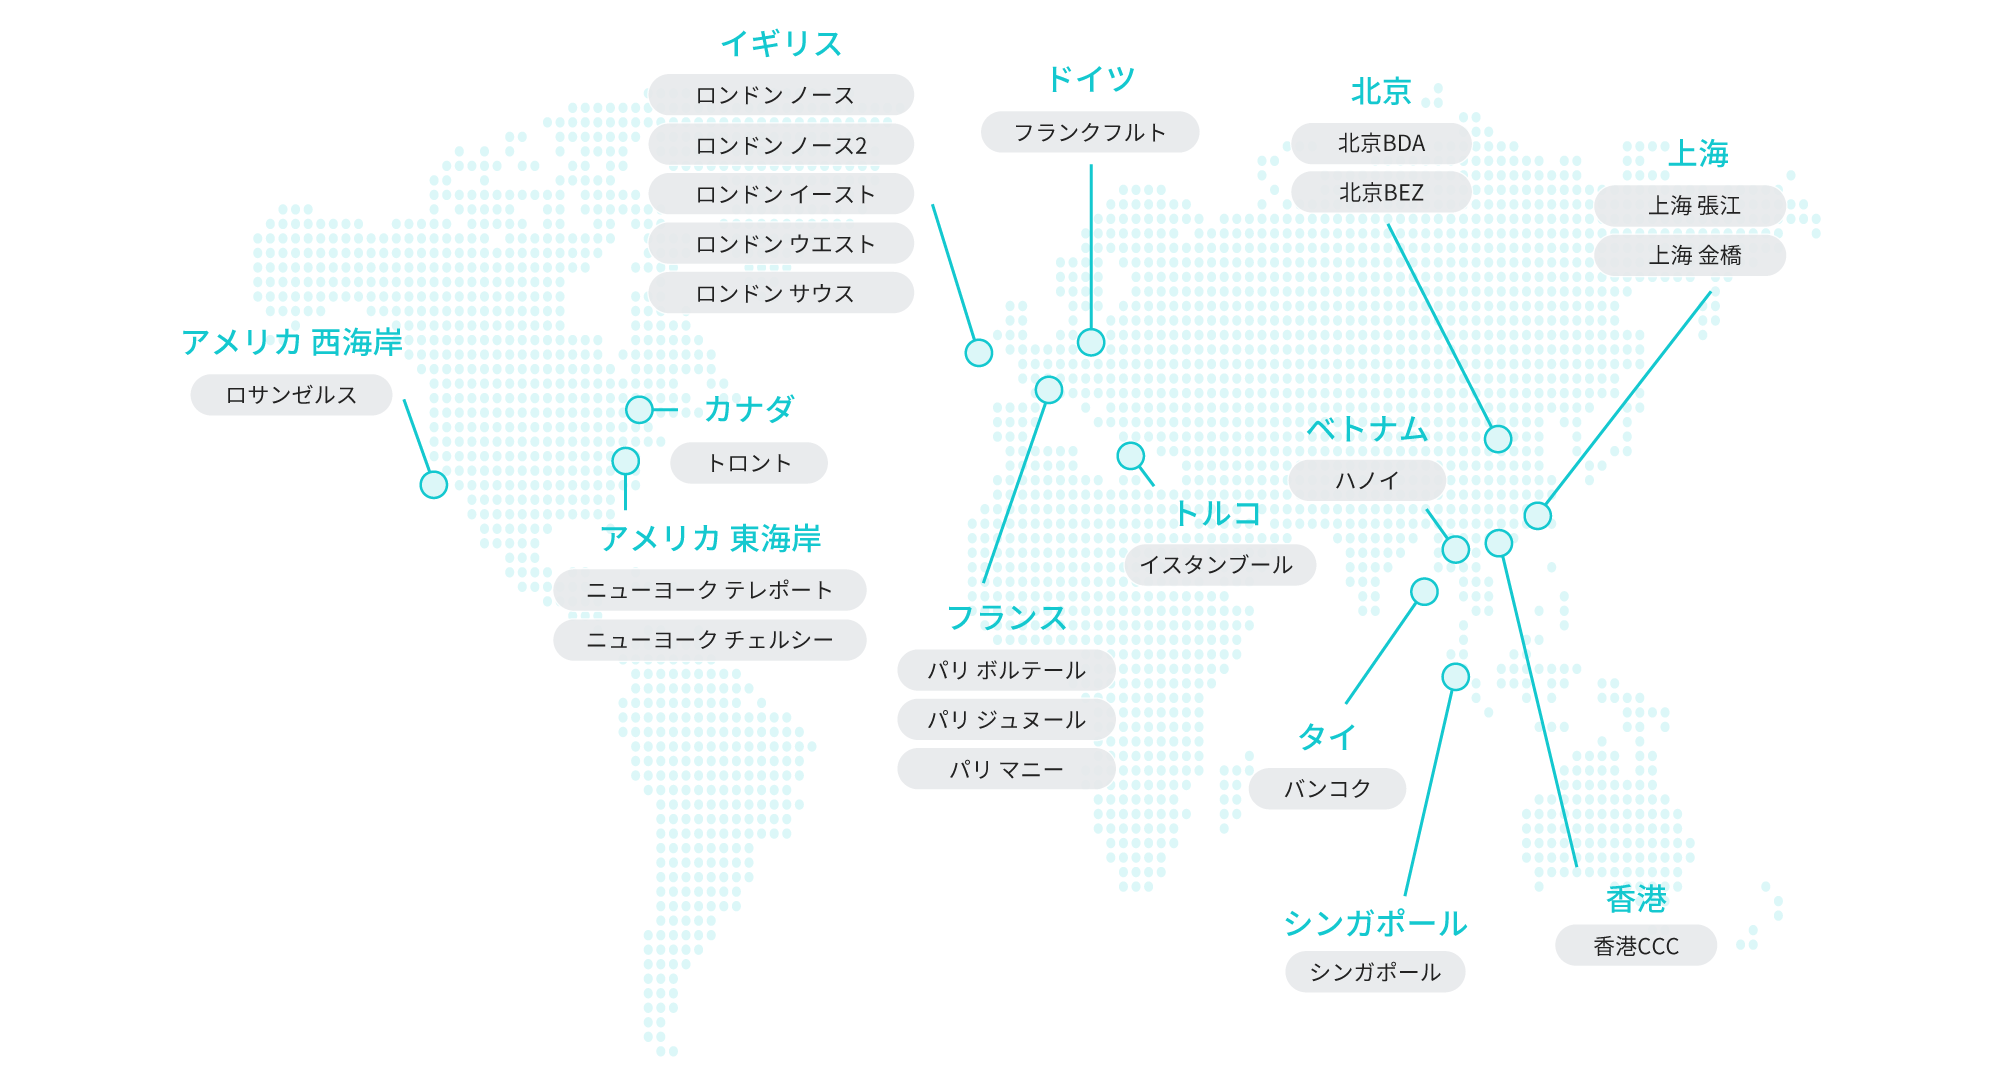  海外拠点一覧を世界地図に図示(アメリカ、イギリス、カナダ、上海、シンガポール、タイ、トルコ、ドイツ、フランス、ベトナム、北京、香港)